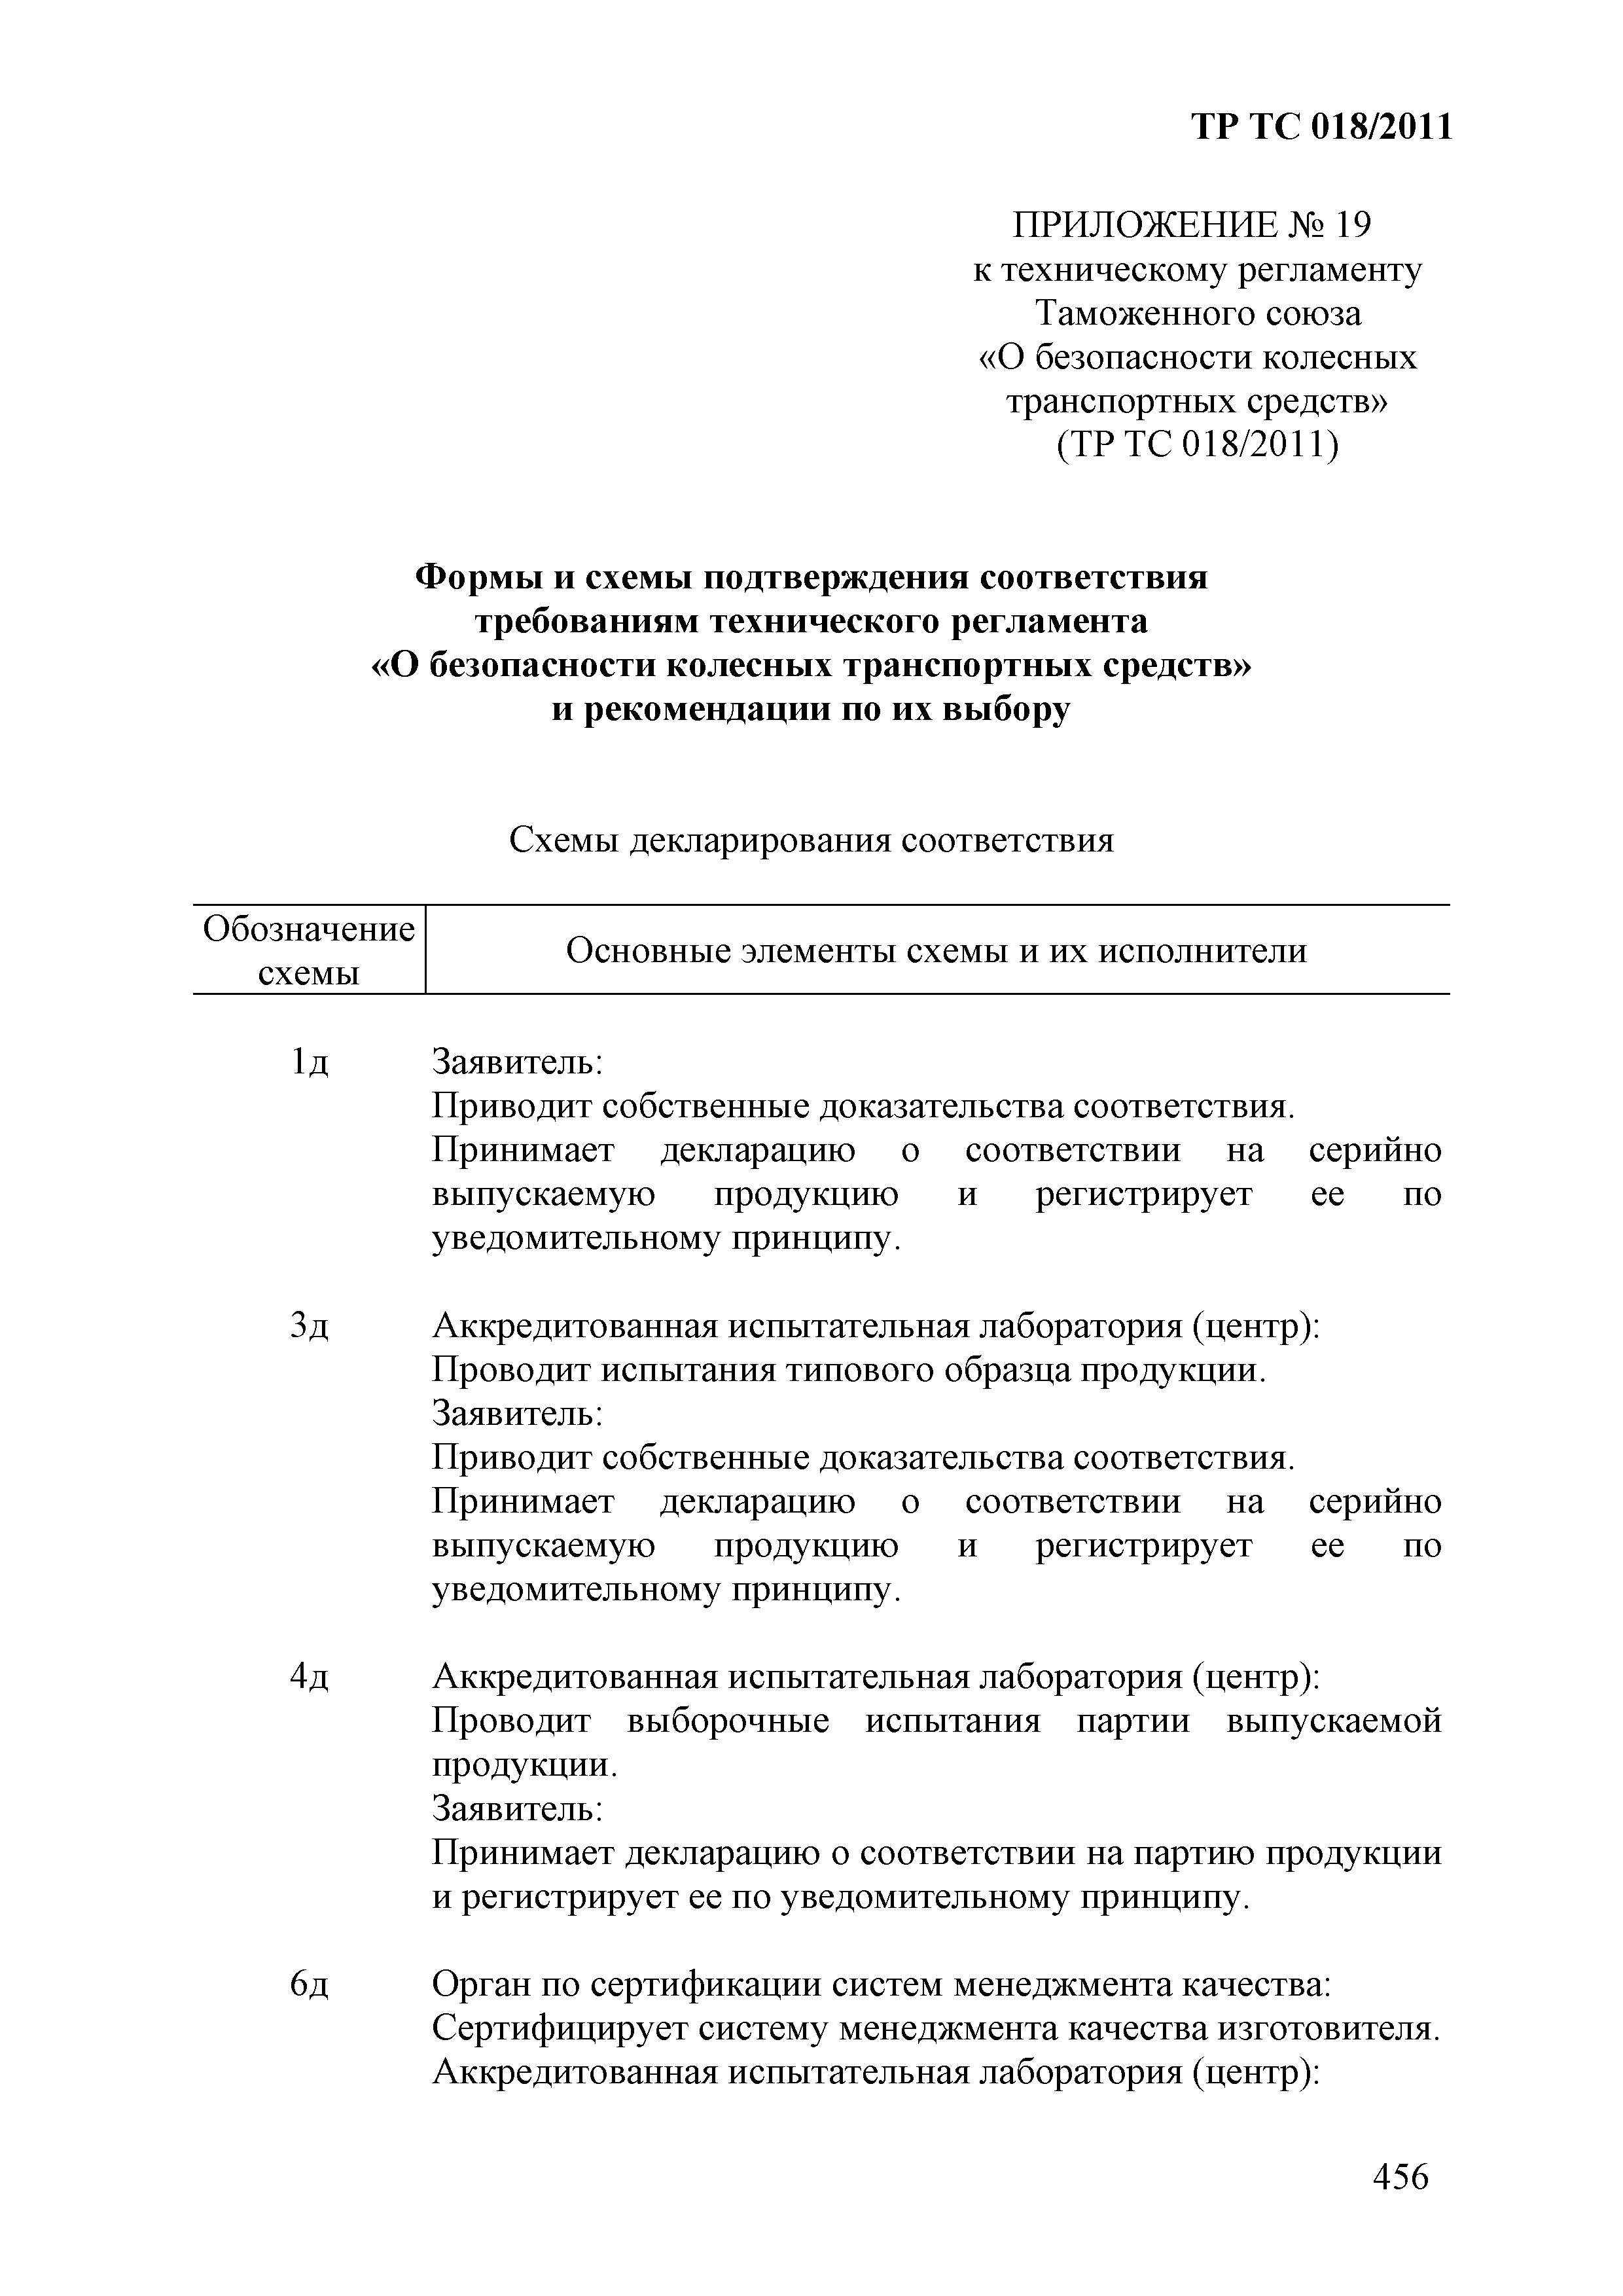 Технический регламент Таможенного союза 018/2011